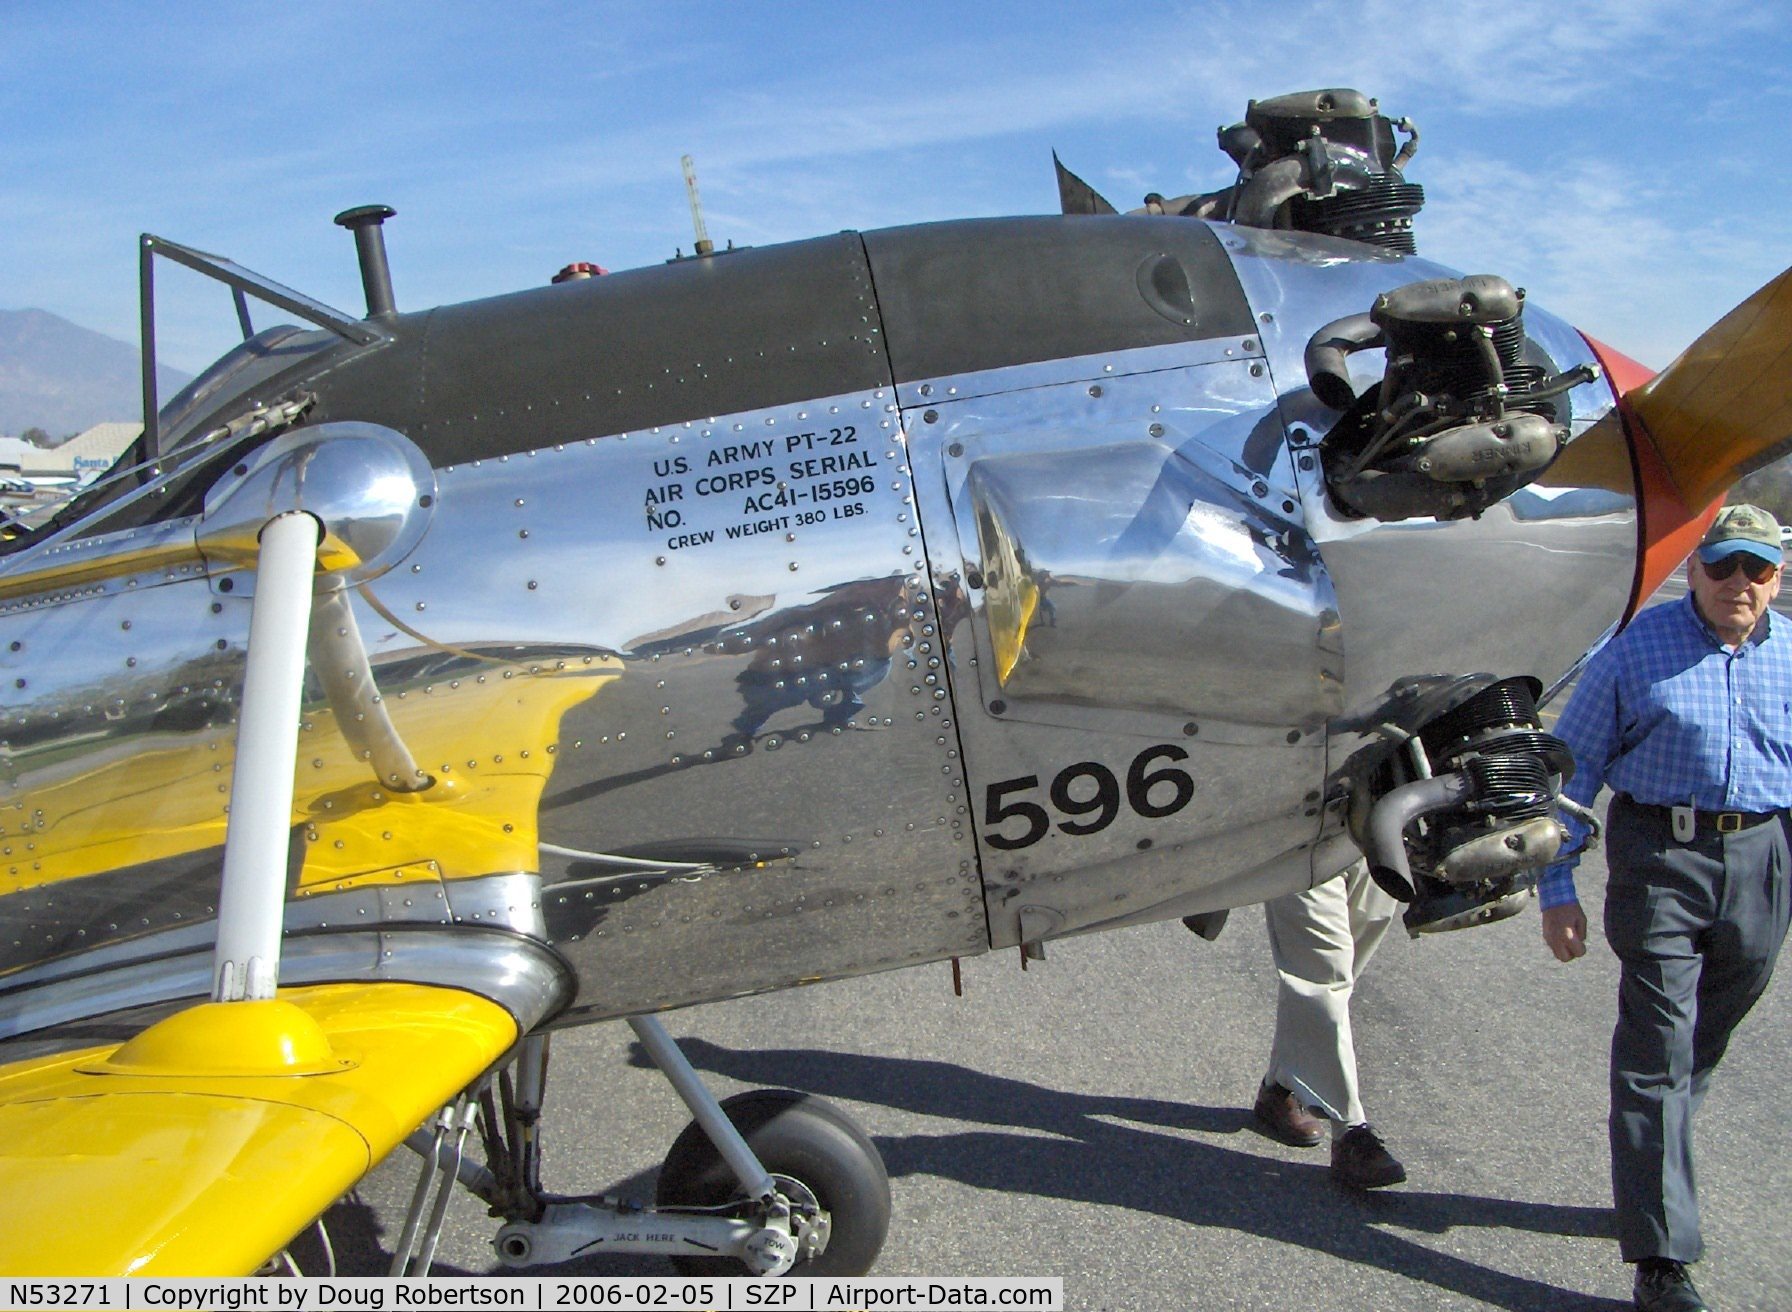 N53271, 1941 Ryan Aeronautical ST3KR C/N 1625, Ryan Aeronautical ST-3KR as PT-22, Kinner R5-540-1 160 Hp, Aircraft data stencil